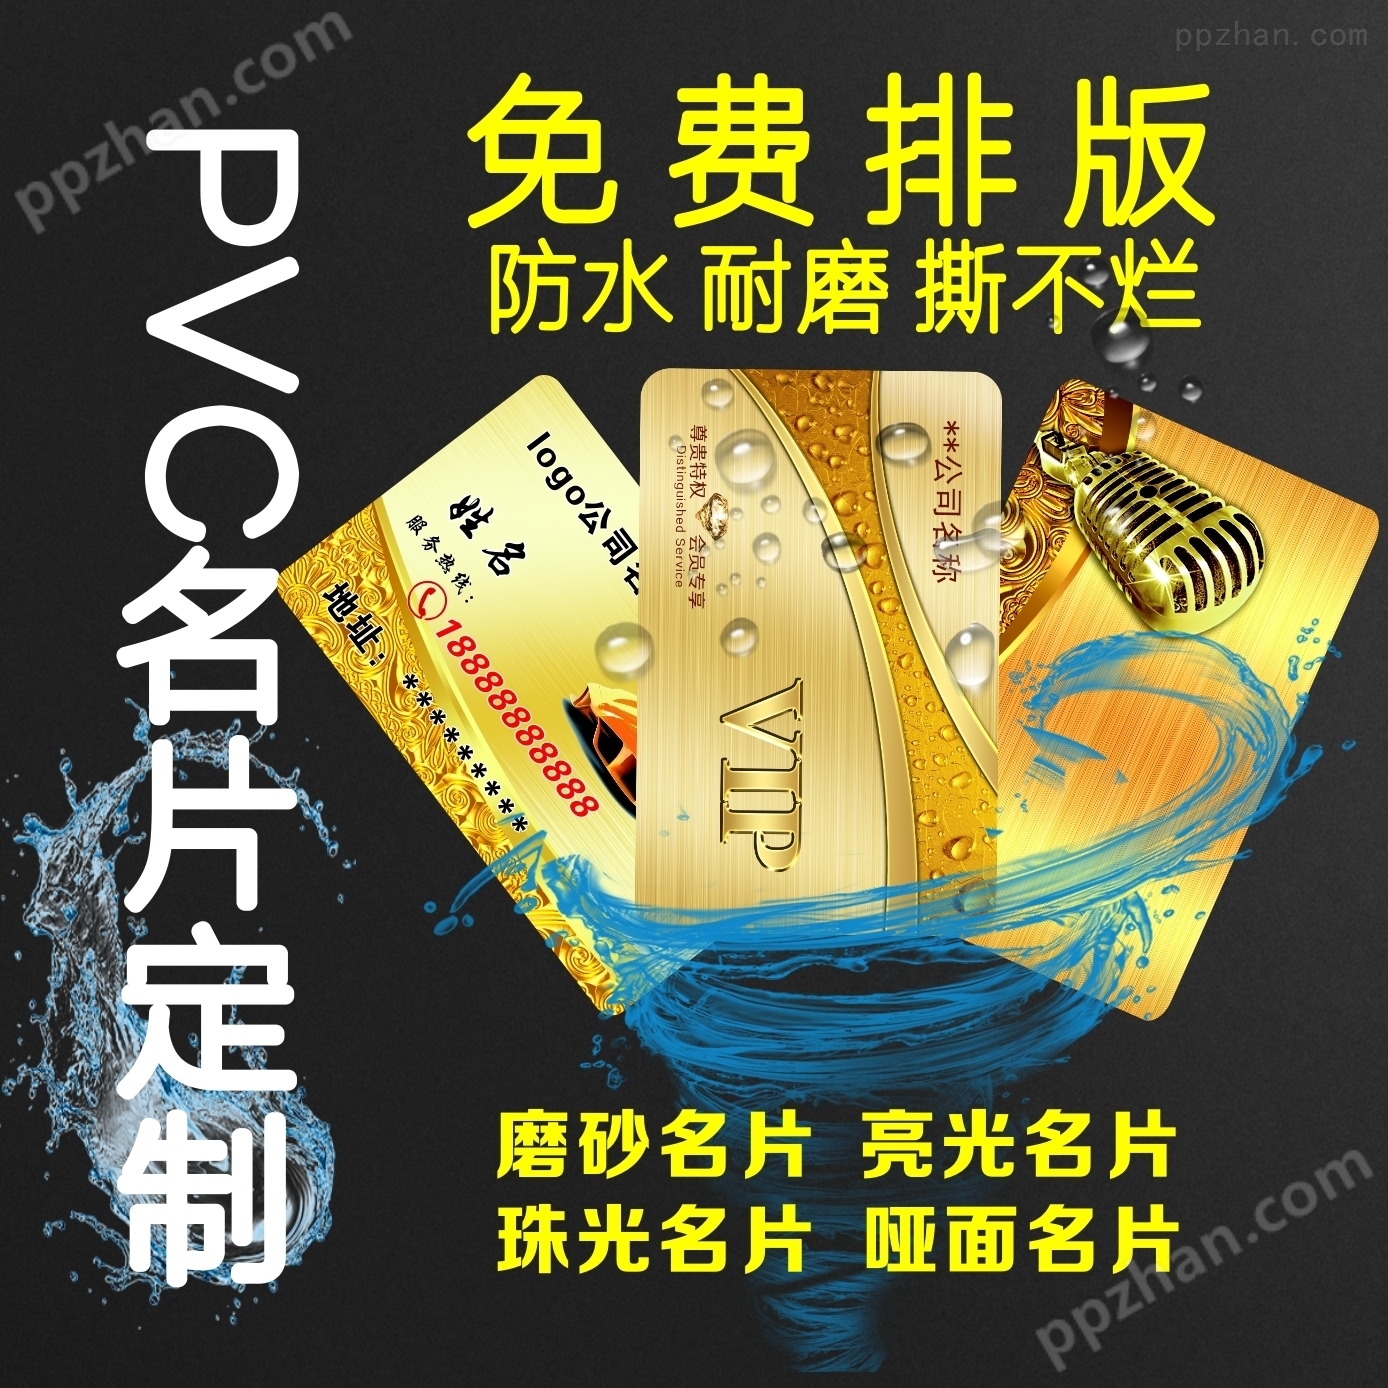 一张起印PVC证卡的多功能彩印一体机